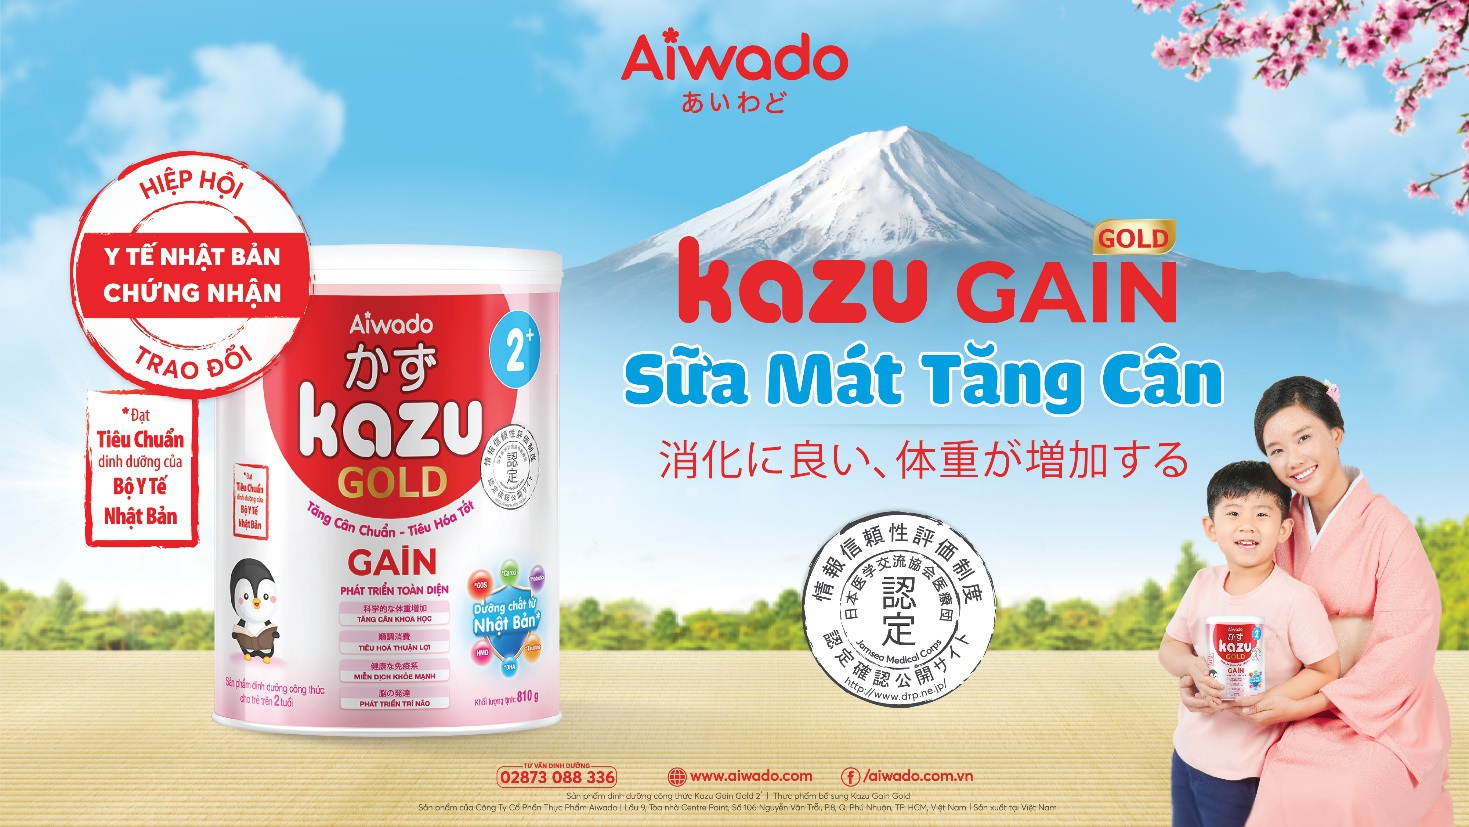 Y tế Nhật Bản chứng nhận sữa mát tăng cân Kazu Gain Gold của Aiwado-3